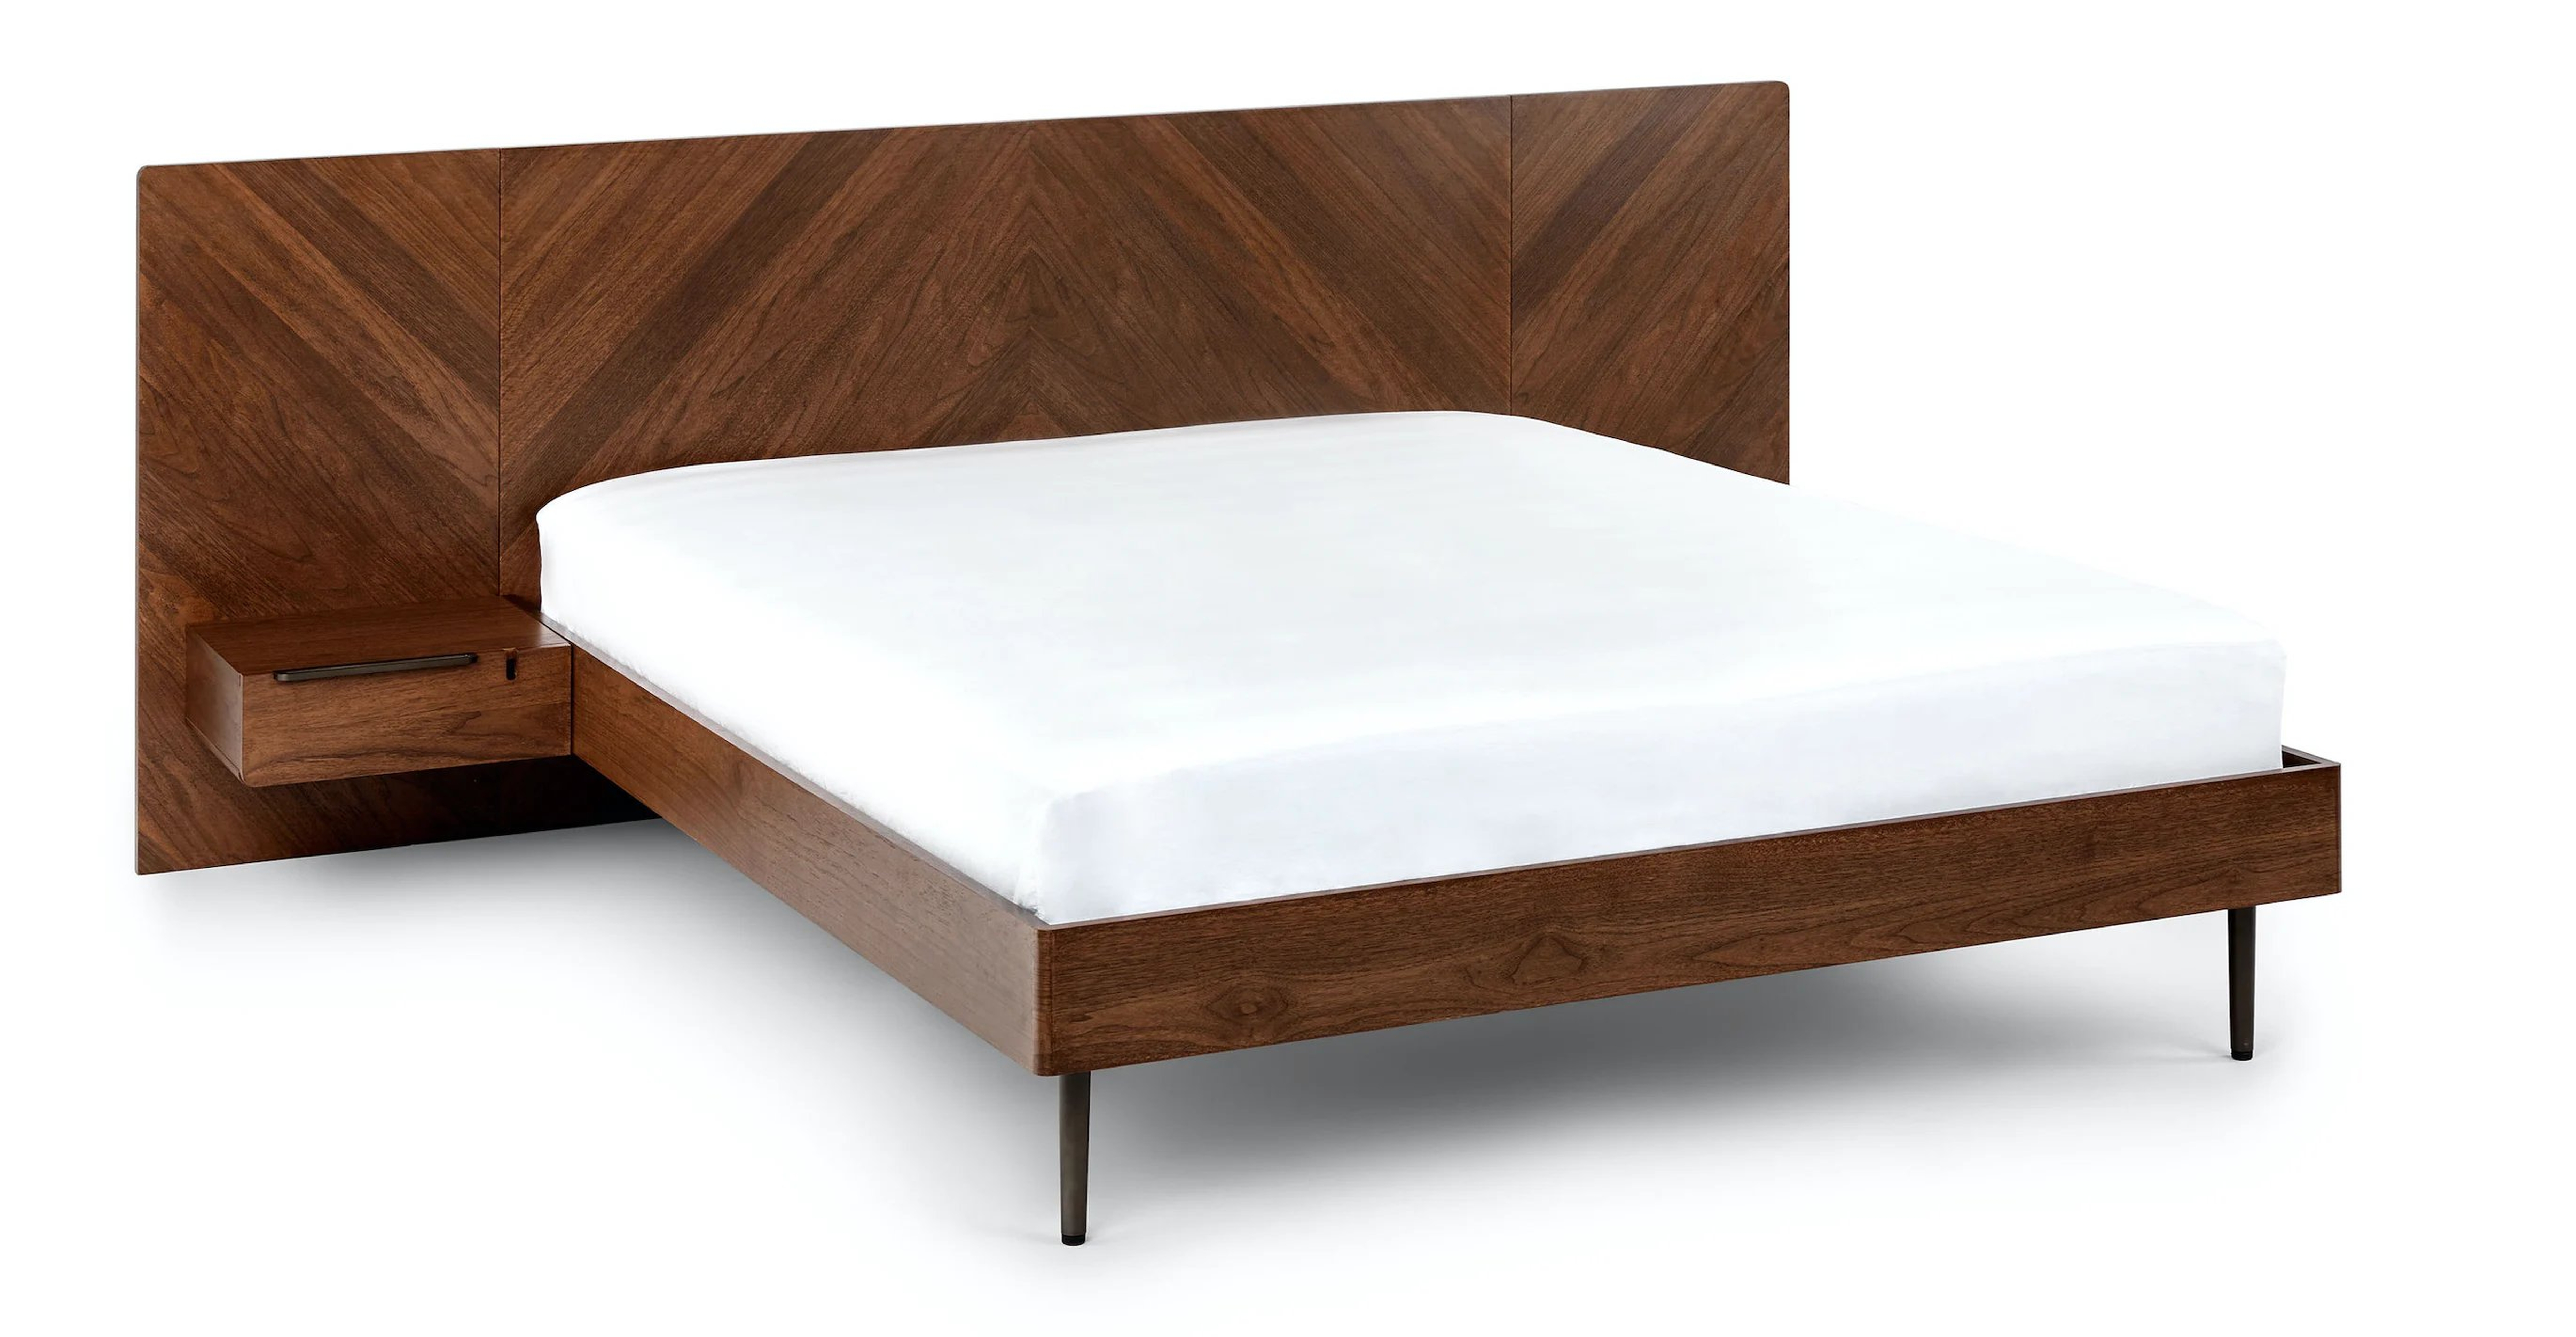 Nera Walnut Queen Bed with Nightstands - Article